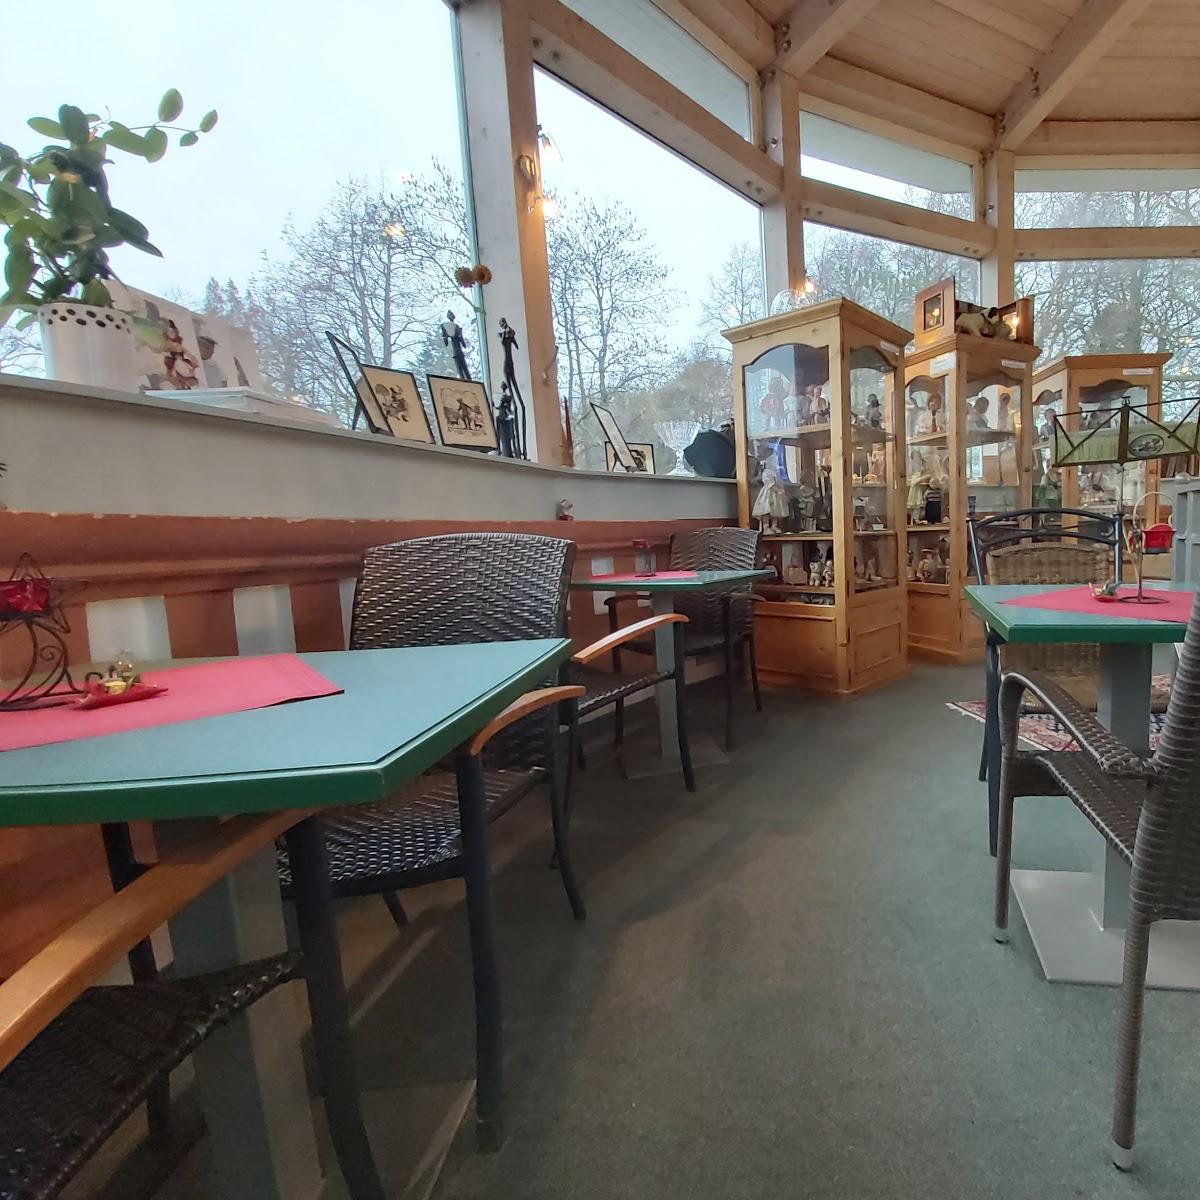 Restaurant "Museumscafé Am Schwanensee (Puppenmuseum)" in Putbus